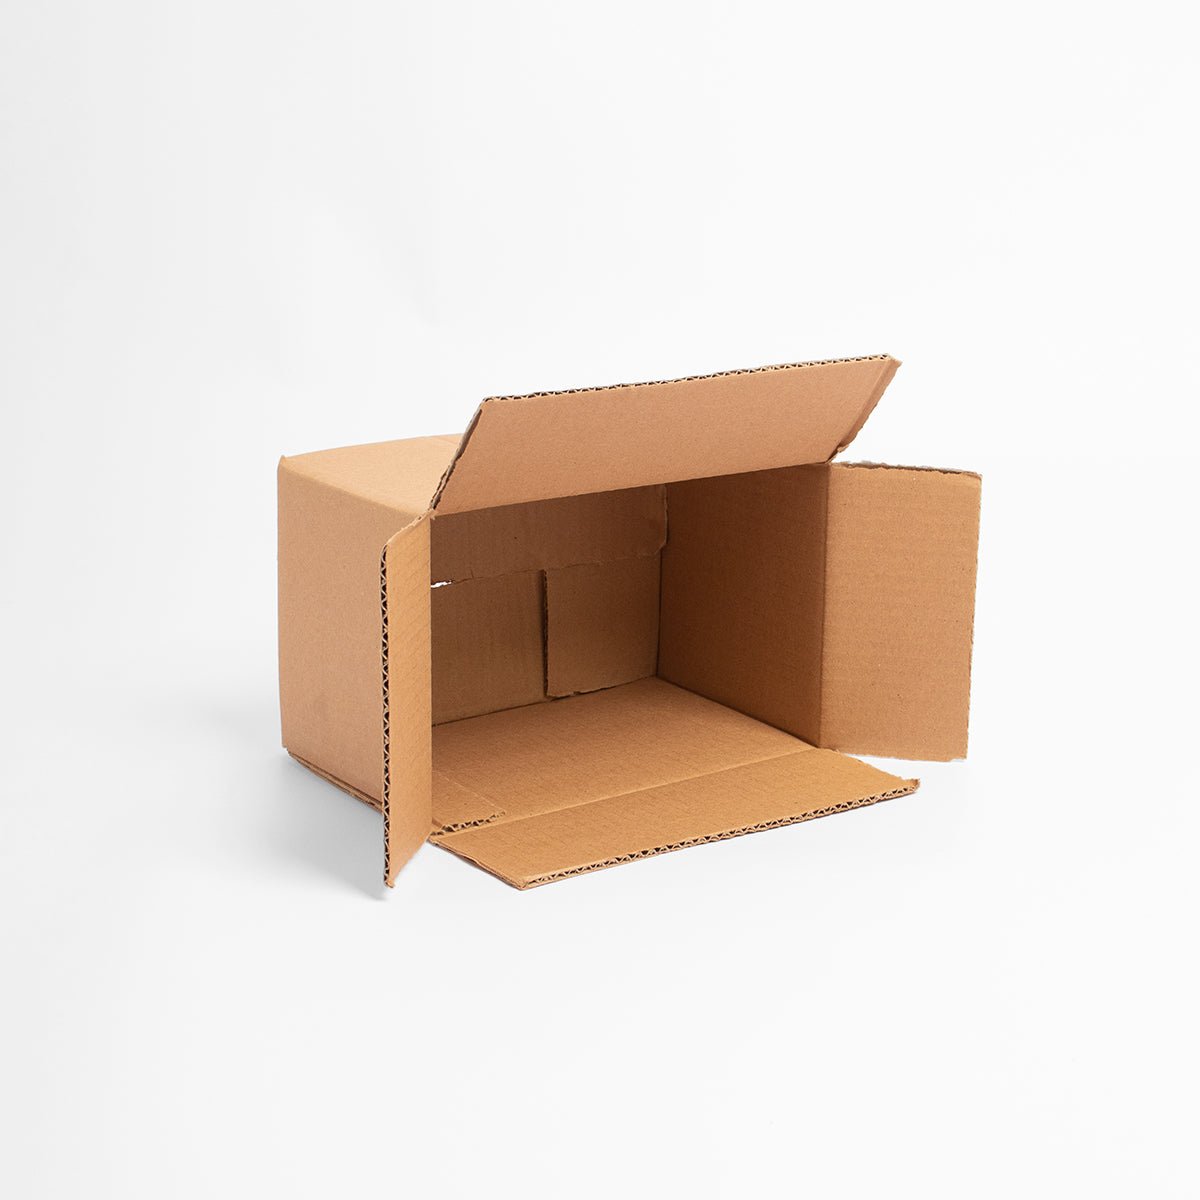 Caja de Cartón - 25 x 20 x 10 cm - Rectangular - Skyboxes México